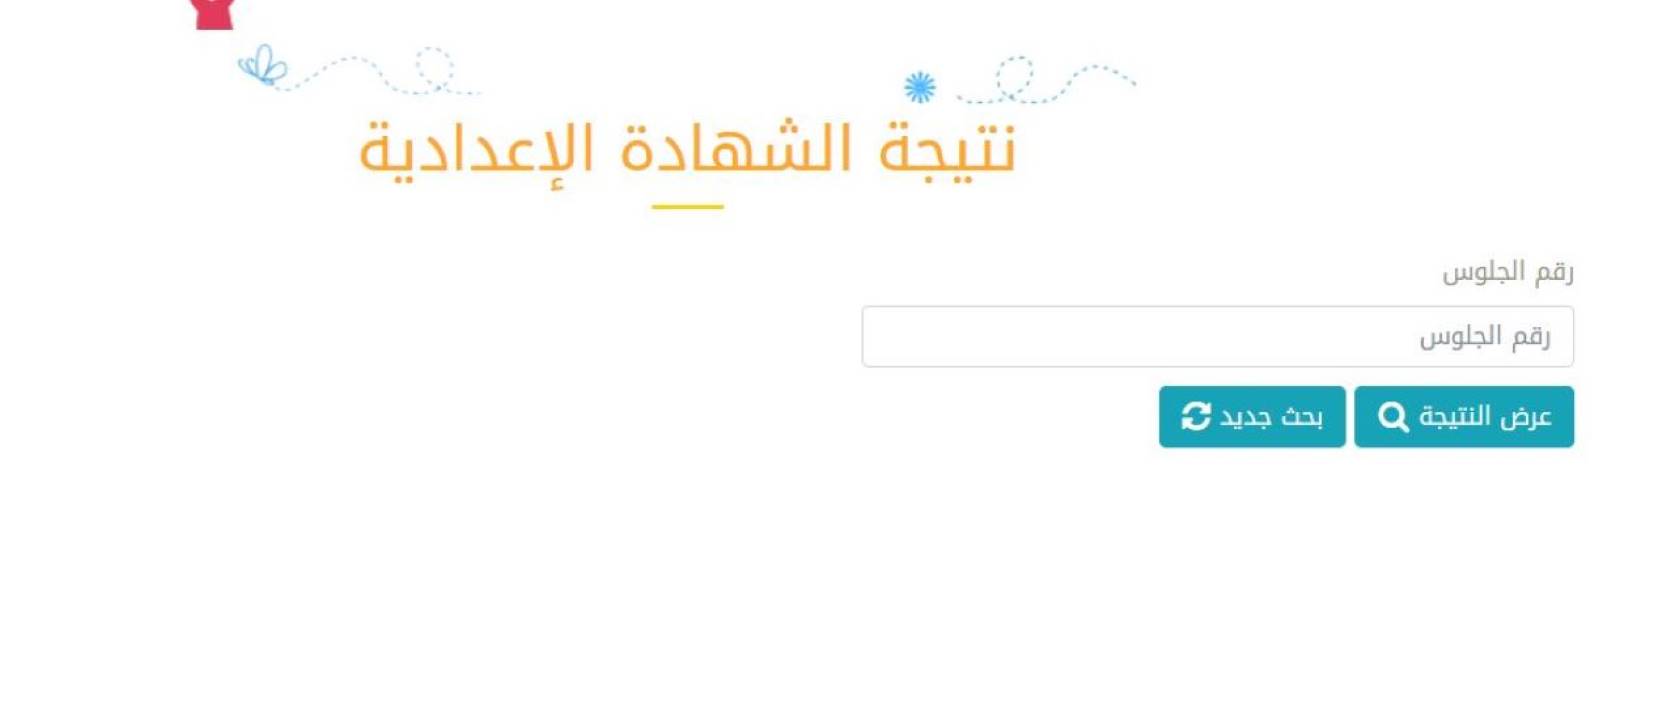 نتيجة الشهادة الإعدادية محافظة القاهرة 2020 موقع نتائج الطلاب